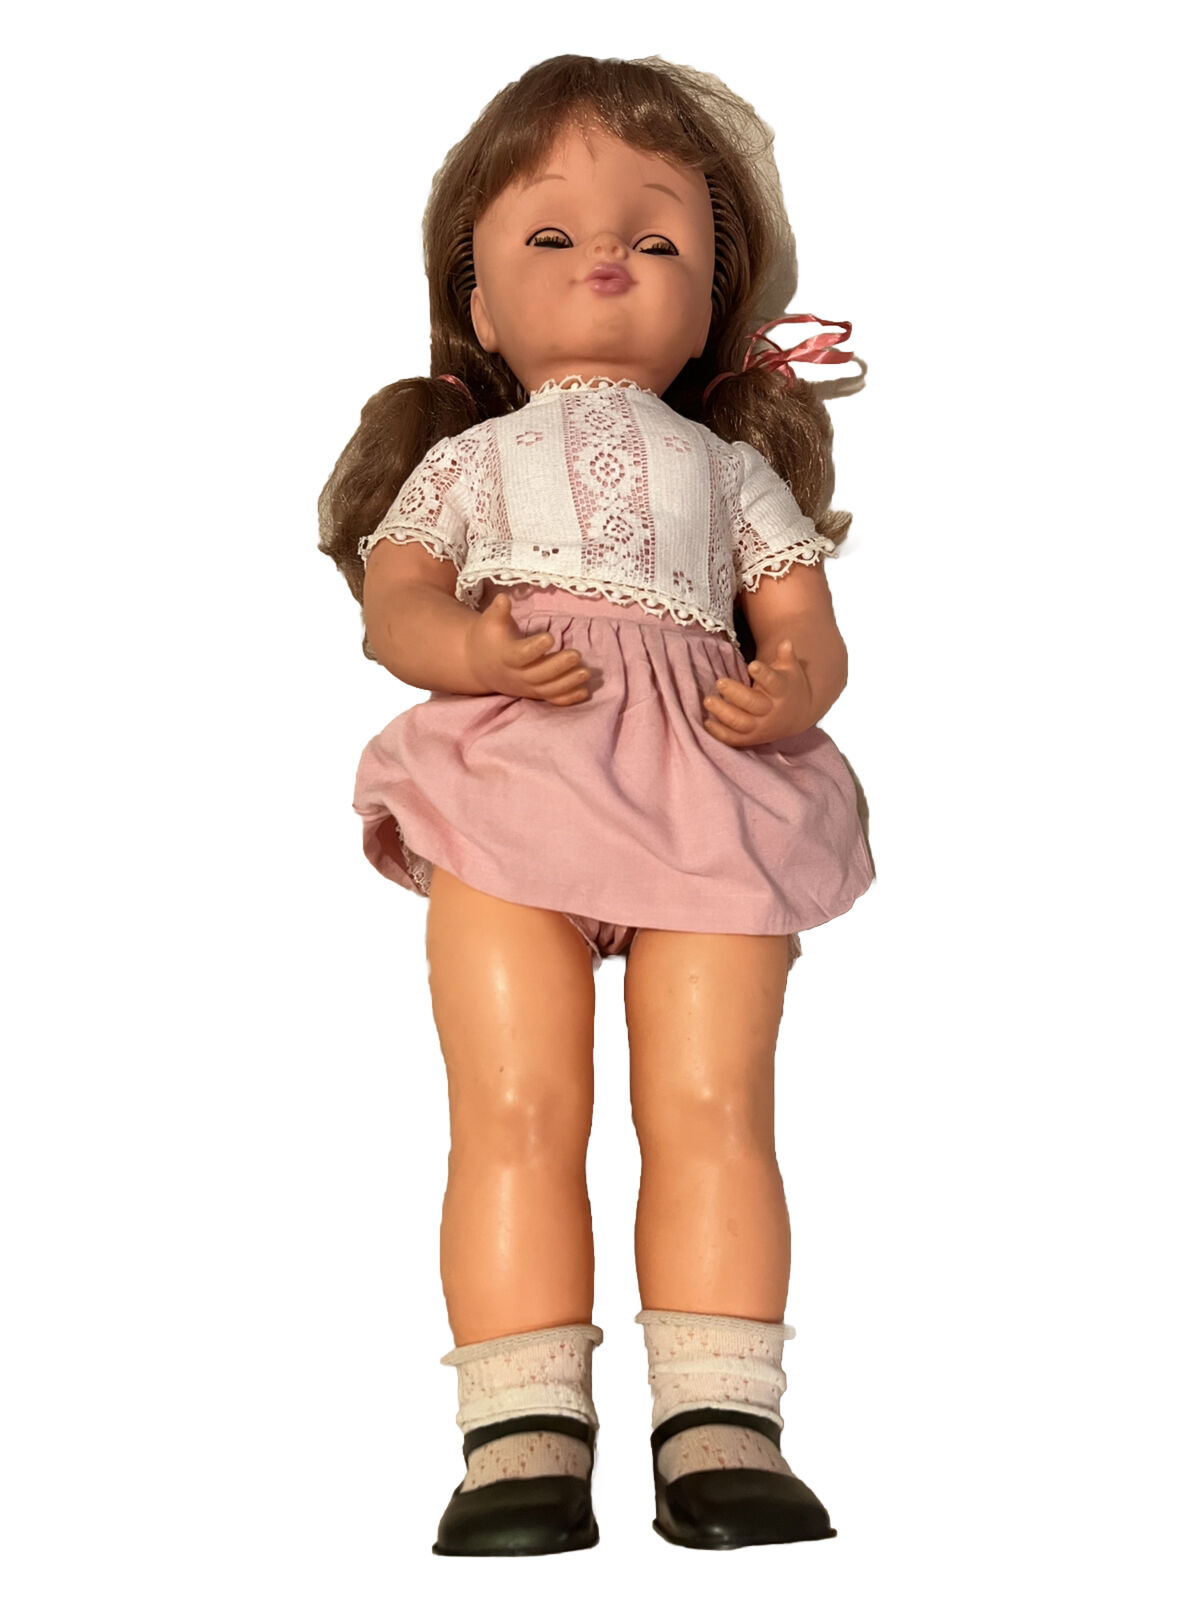 Rare VTG Titti mamma Di Cialdino doll Sebino Rare Doll 20” Lullaby Musical WORKS